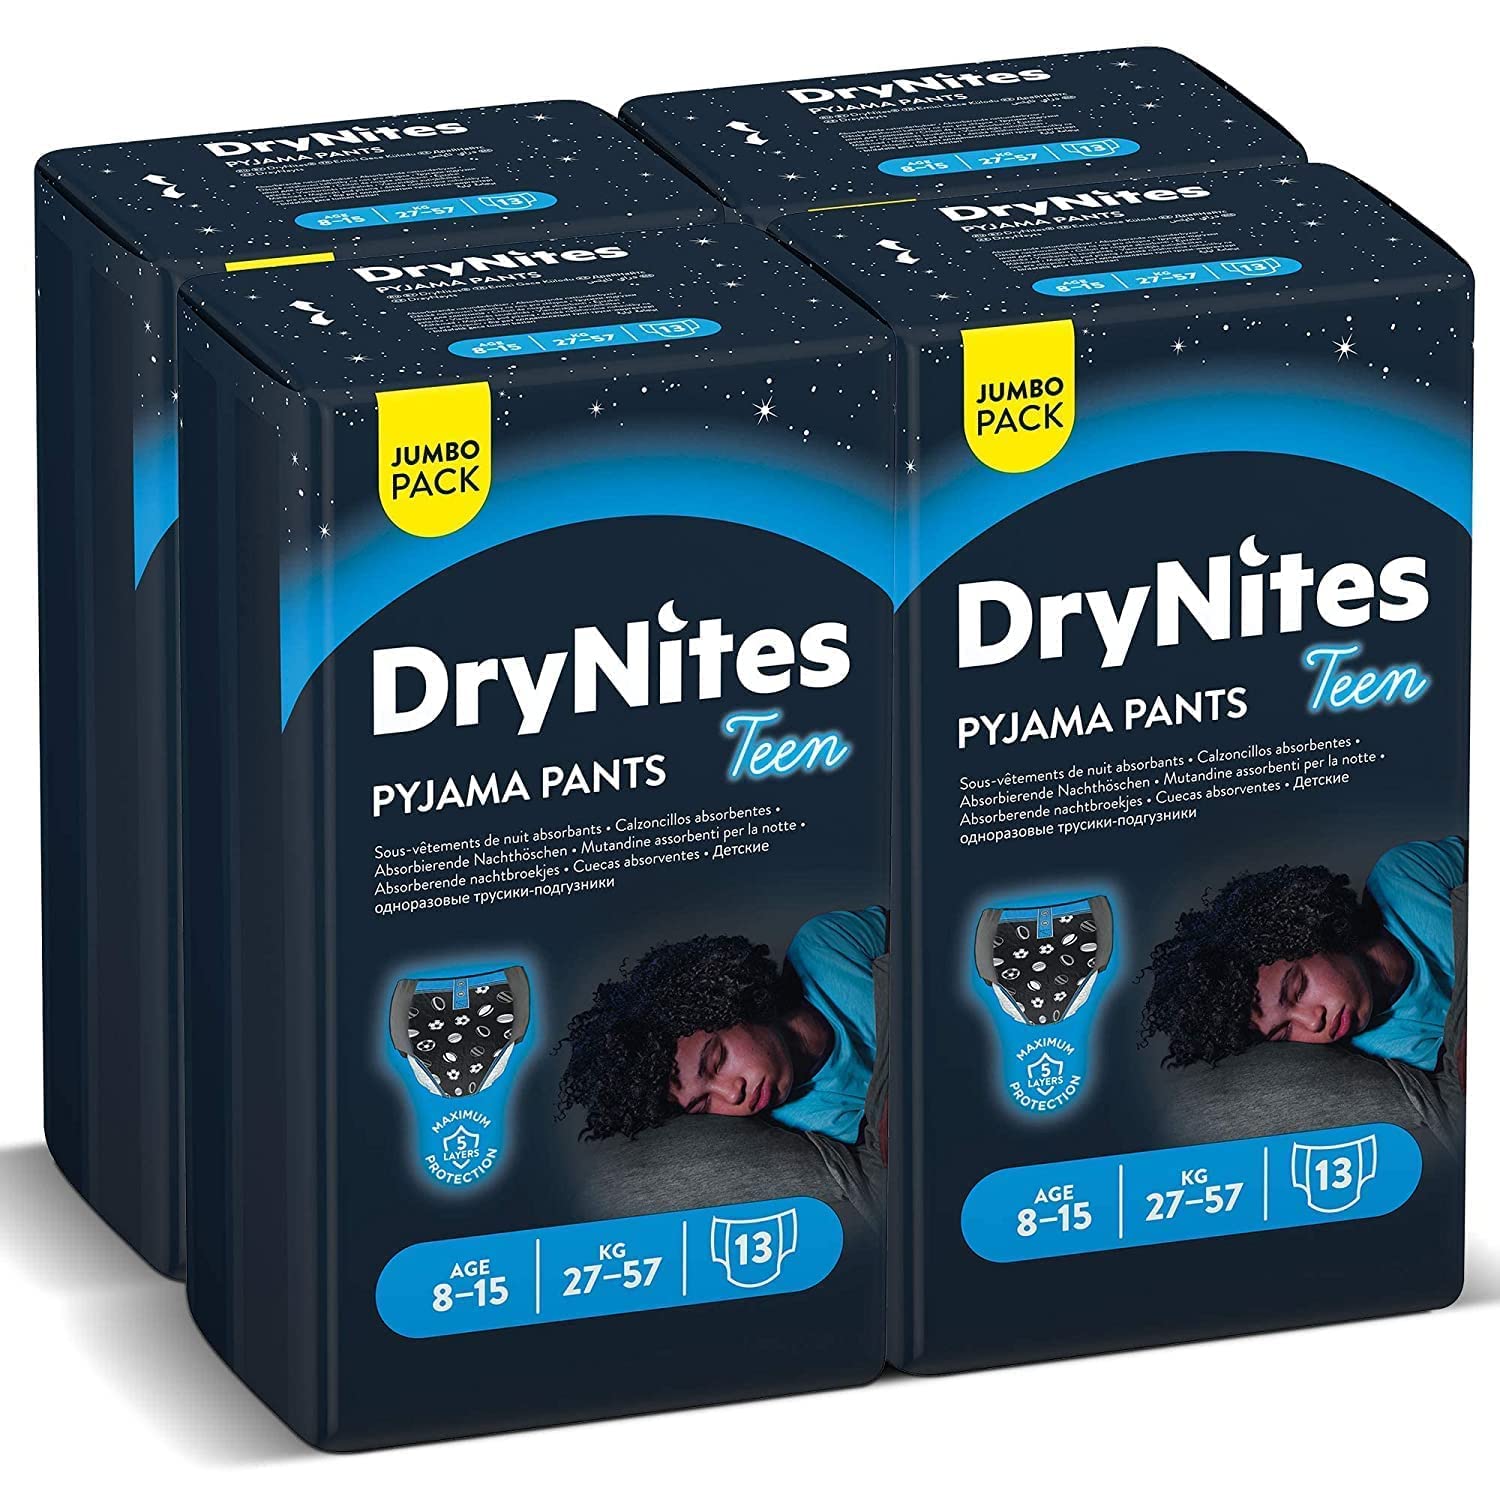 Drynites Pyjama Pants,Blue, Age 8-15 Y, Boy, 27-57 Kg, 4 X 13 Bed Wetting Pants